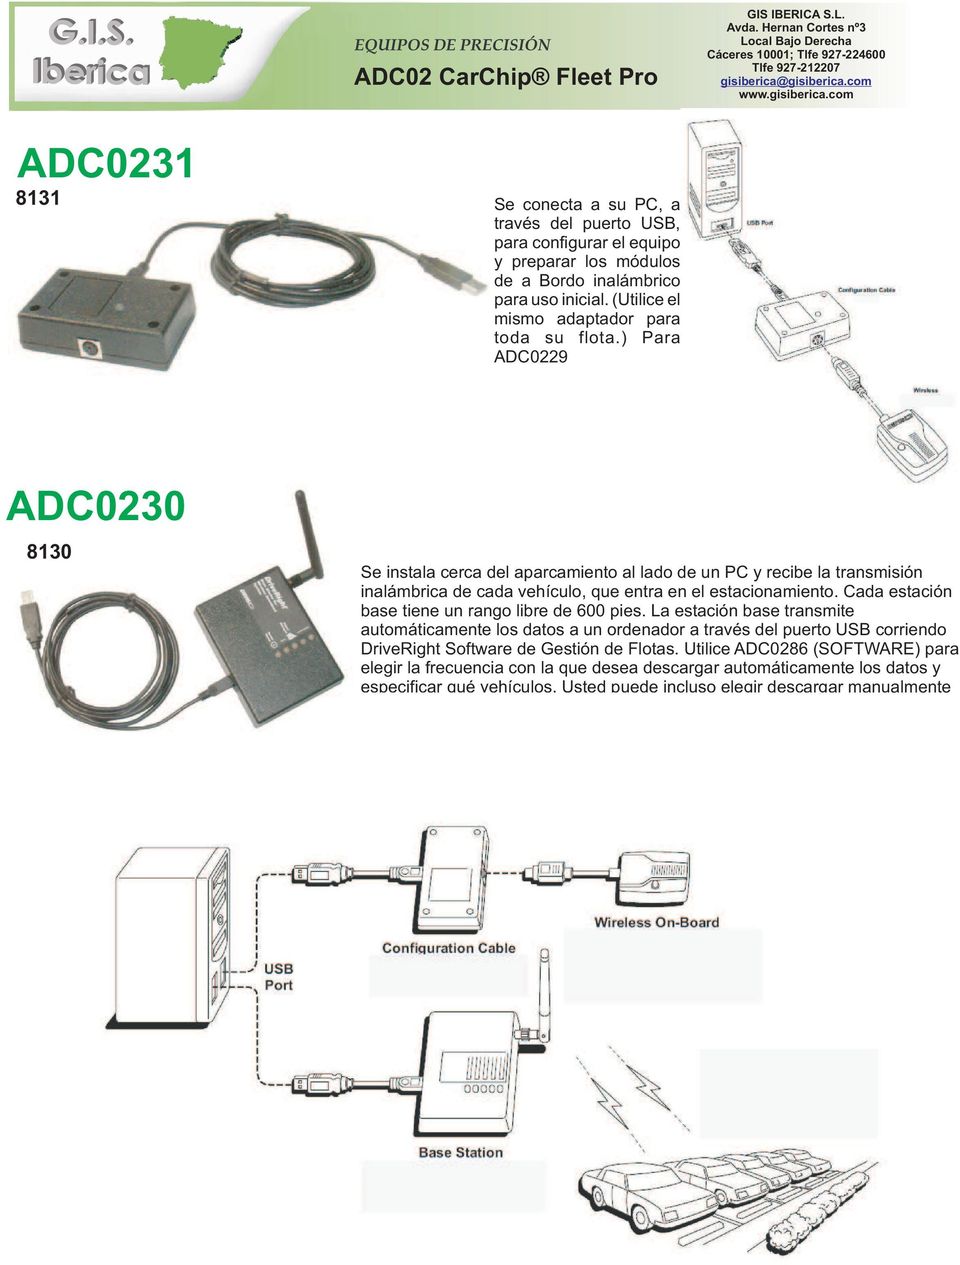 ) Para ADC0229 ADC0230 8130 Se instala cerca del aparcamiento al lado de un PC y recibe la transmisión inalámbrica de cada vehículo, que entra en el estacionamiento.